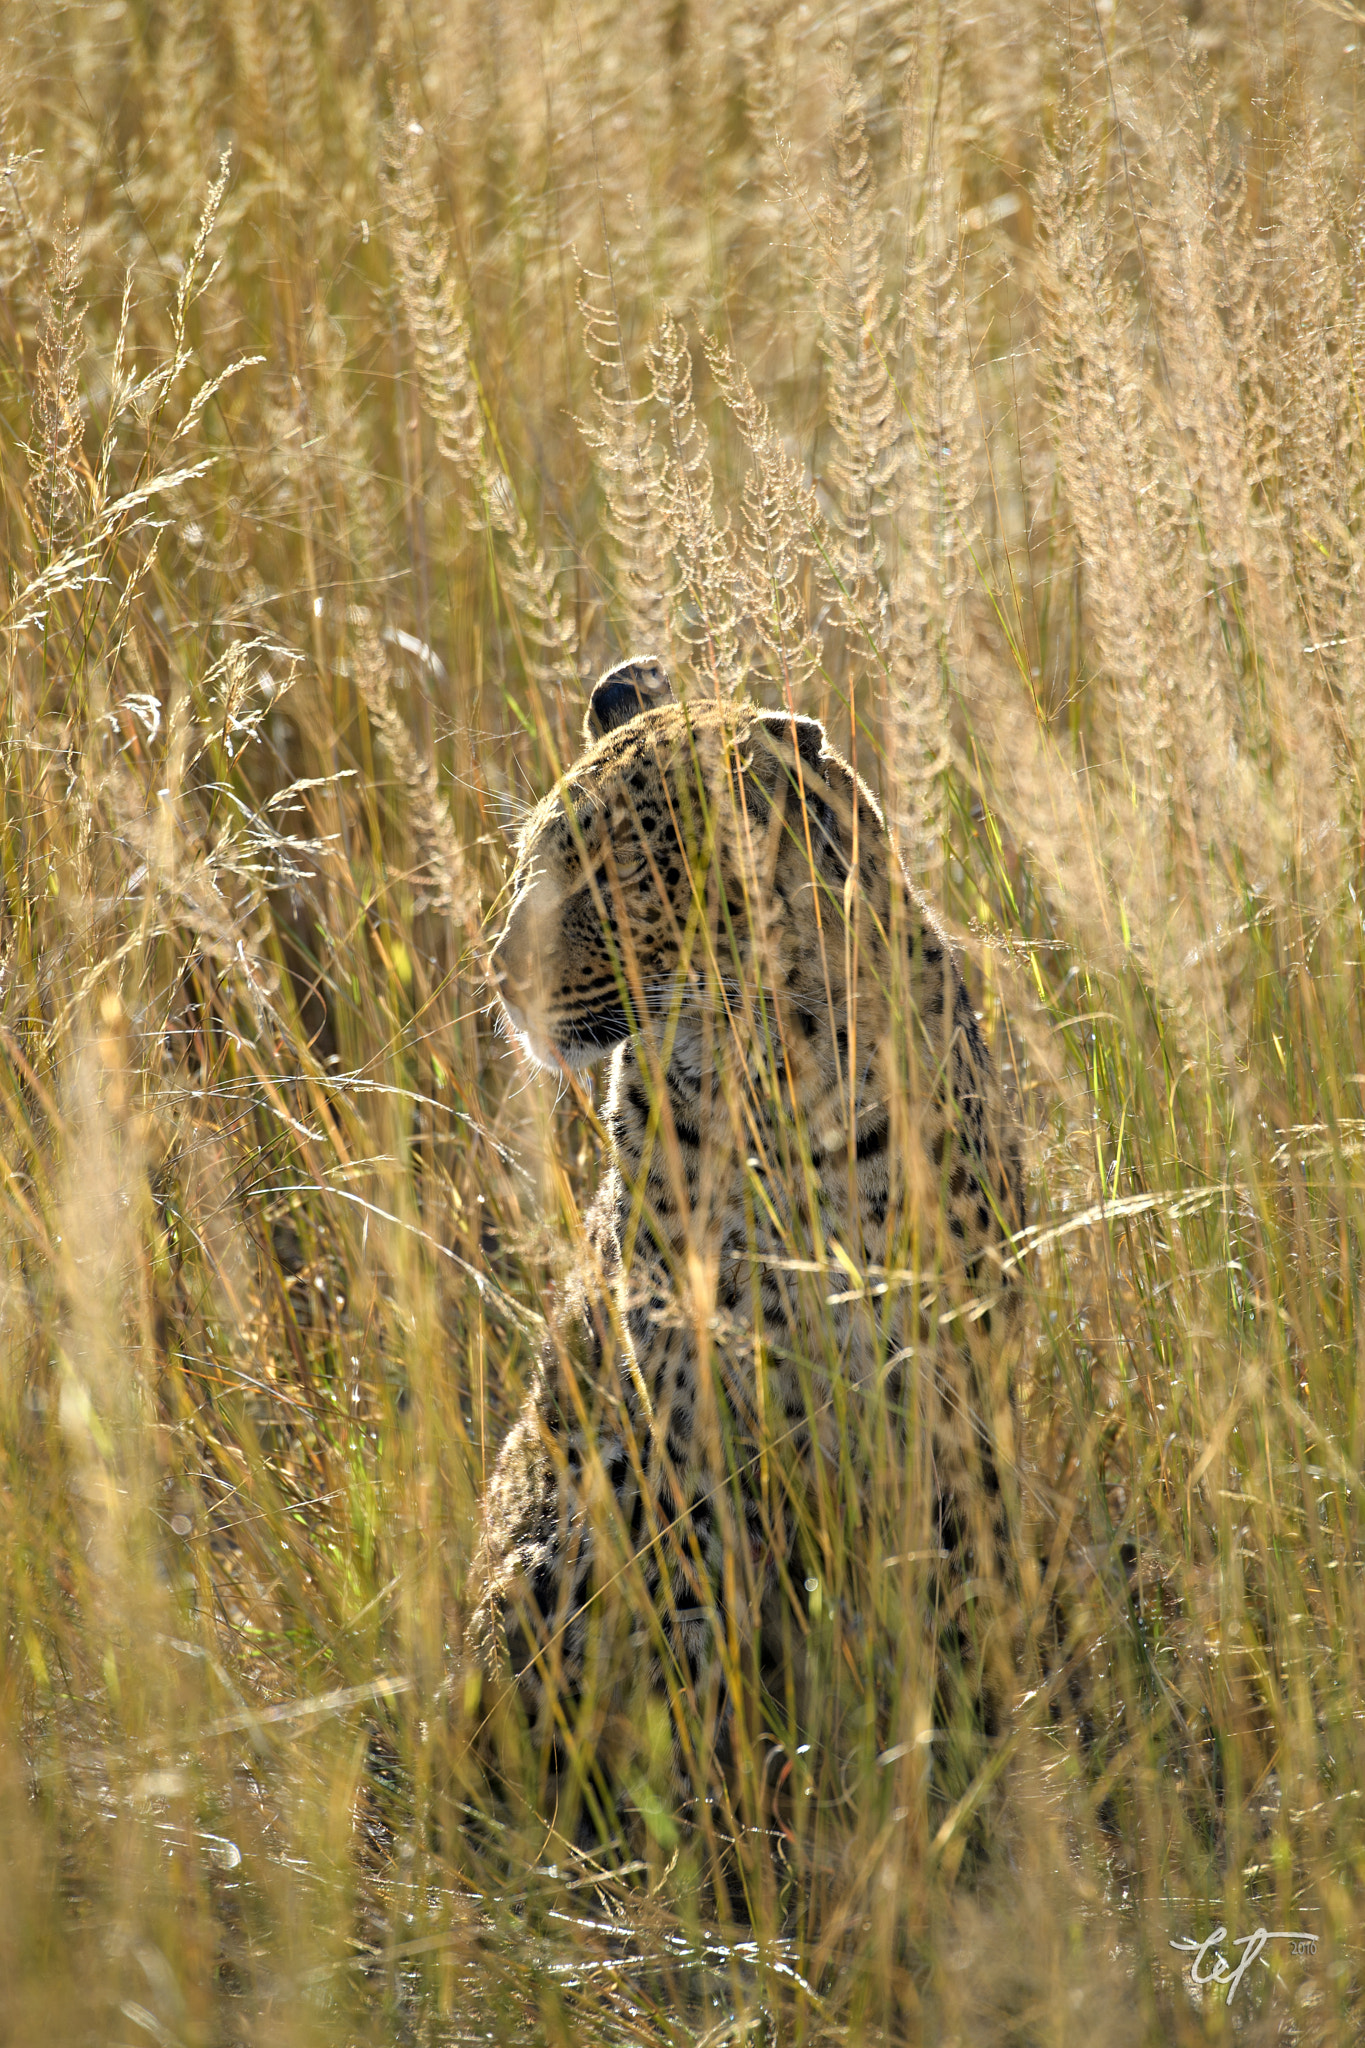 Nikon D5 sample photo. Cat beneath the reeds2 photography